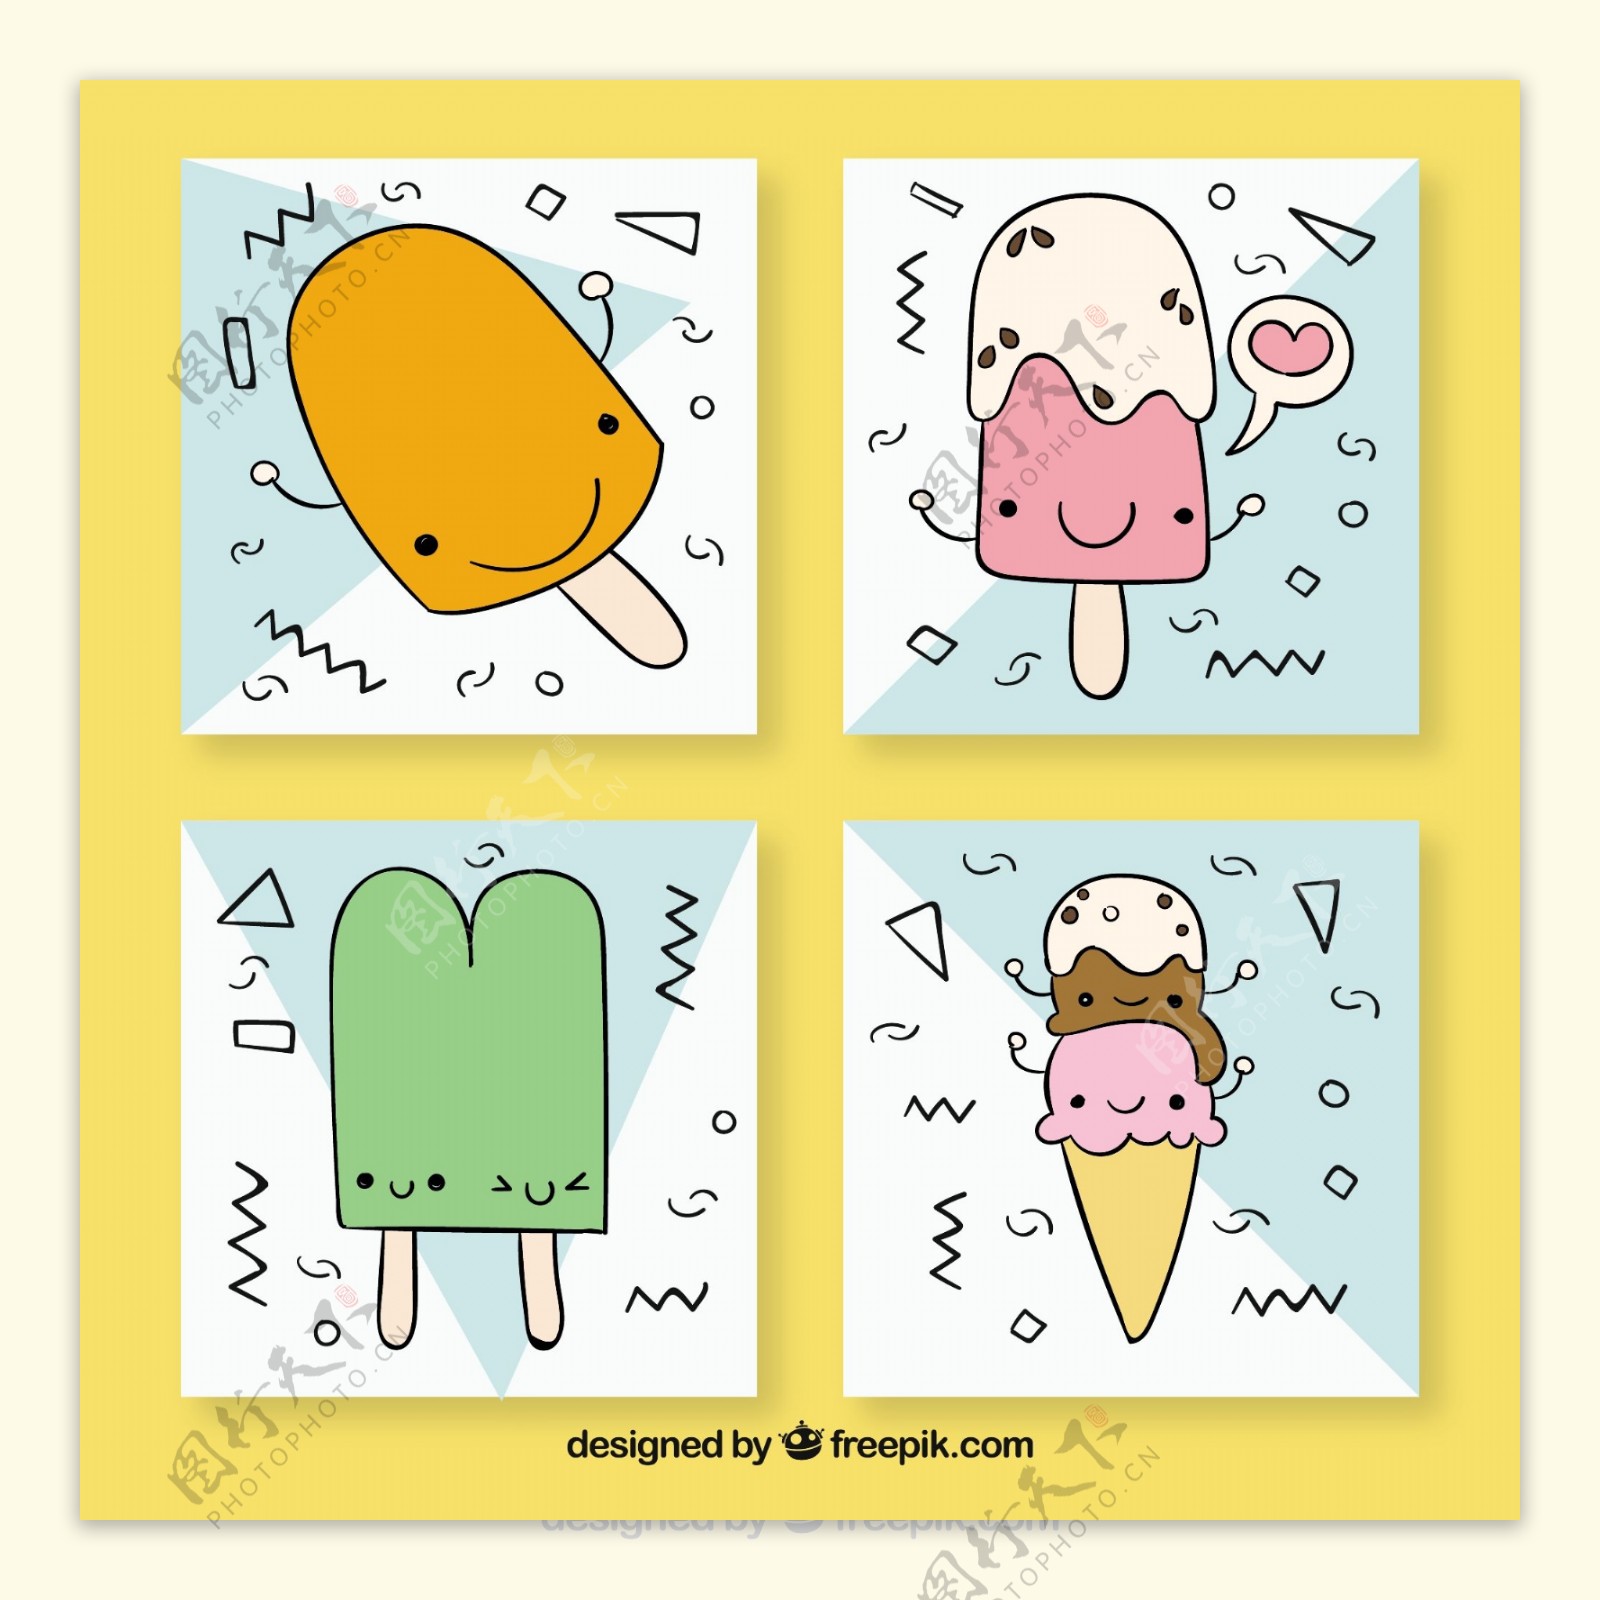 四张手绘冰淇淋人物表情卡片